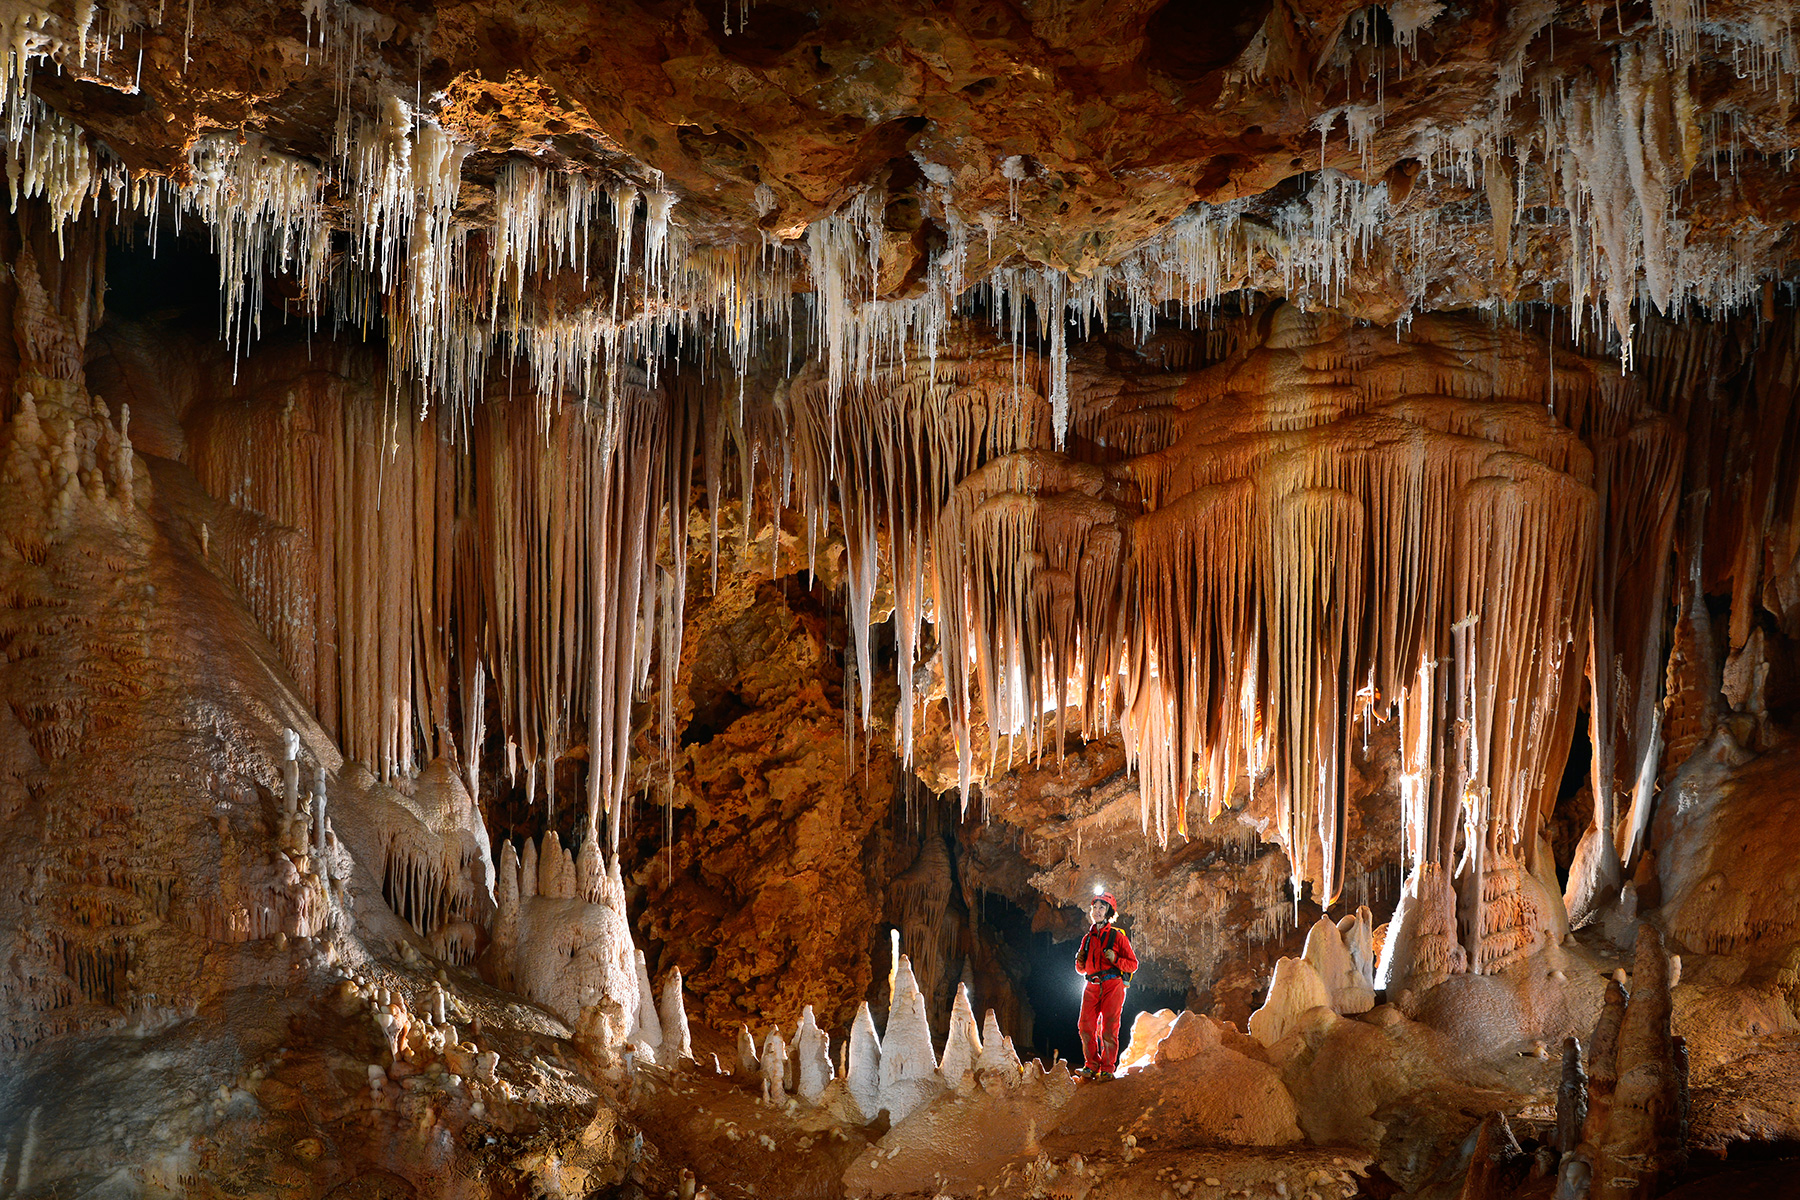 Grotte de Clamouse - Fenêtre dans un ensemble de piliers, stalagmites et stalactites massives (la mâchoire) avec spéléo au centre.